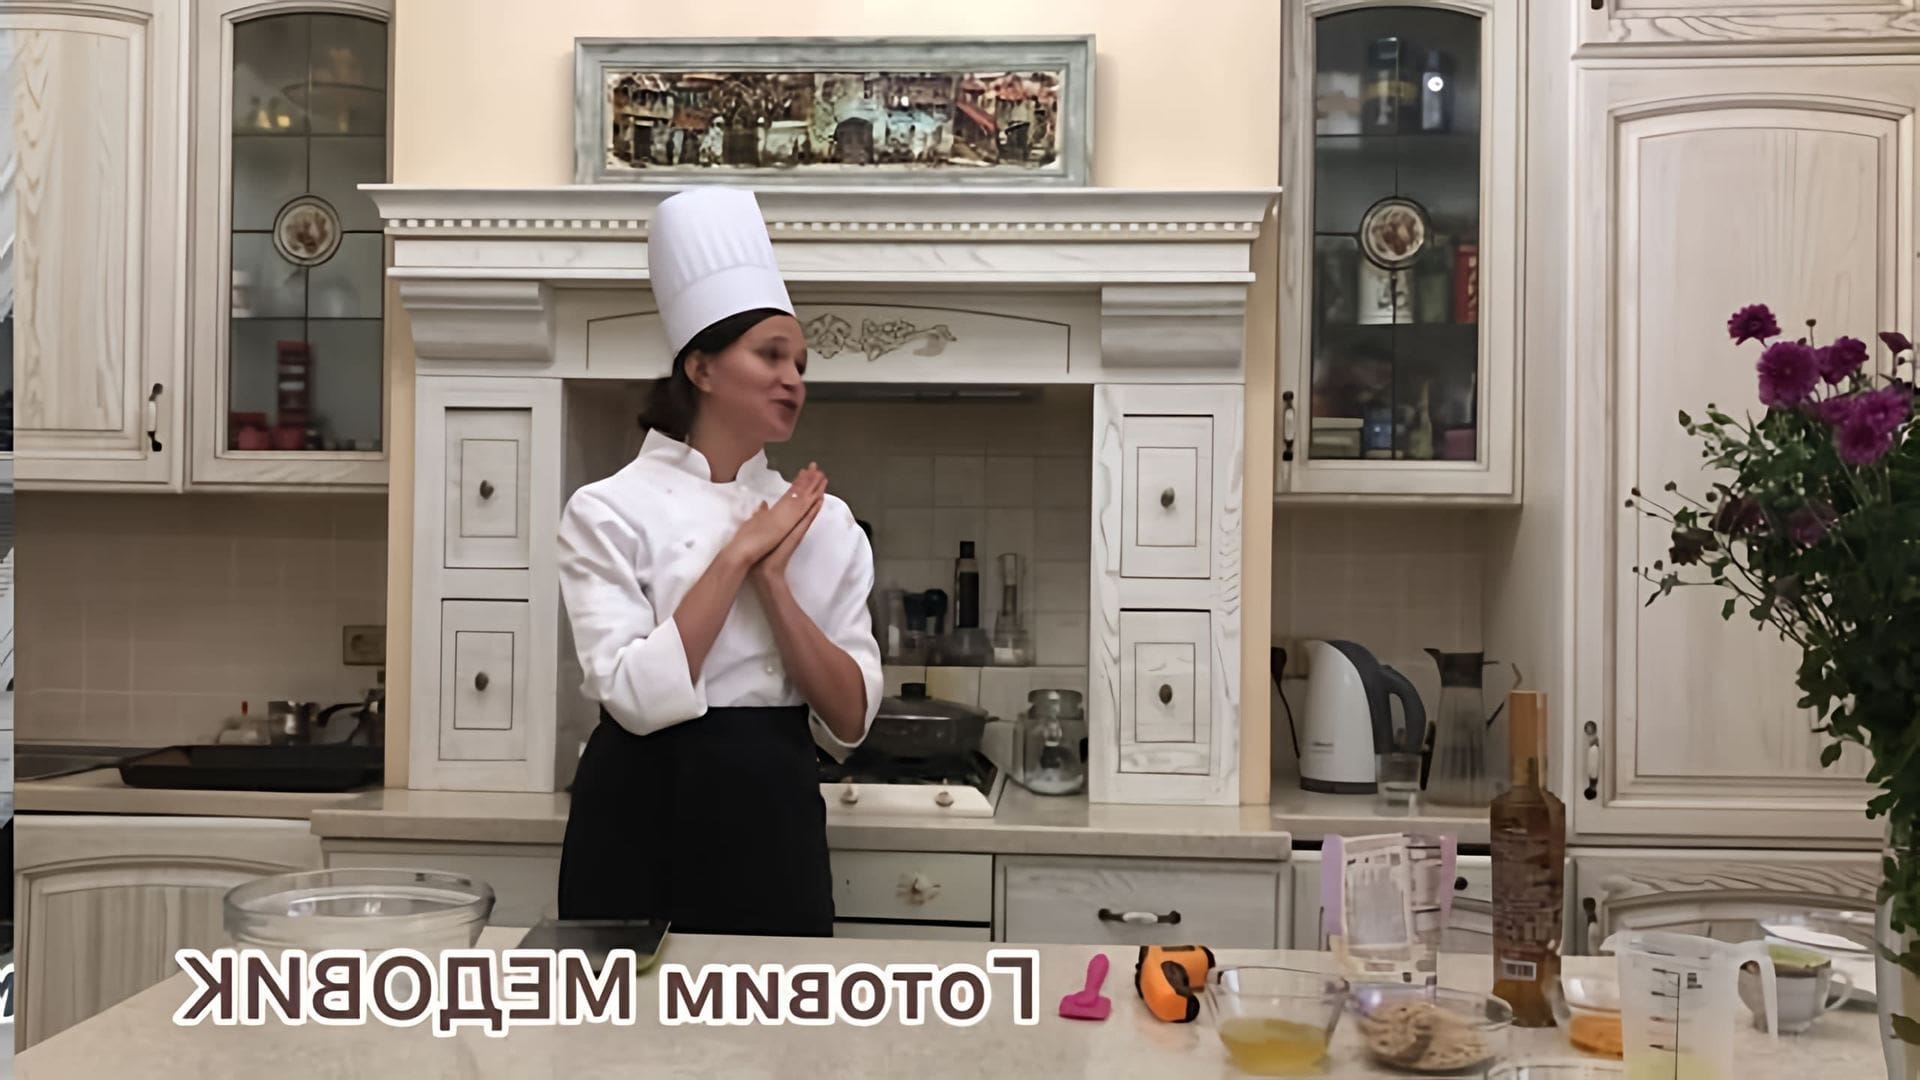 В этом видео демонстрируется рецепт приготовления торта "Медовик" без сахара и глютена